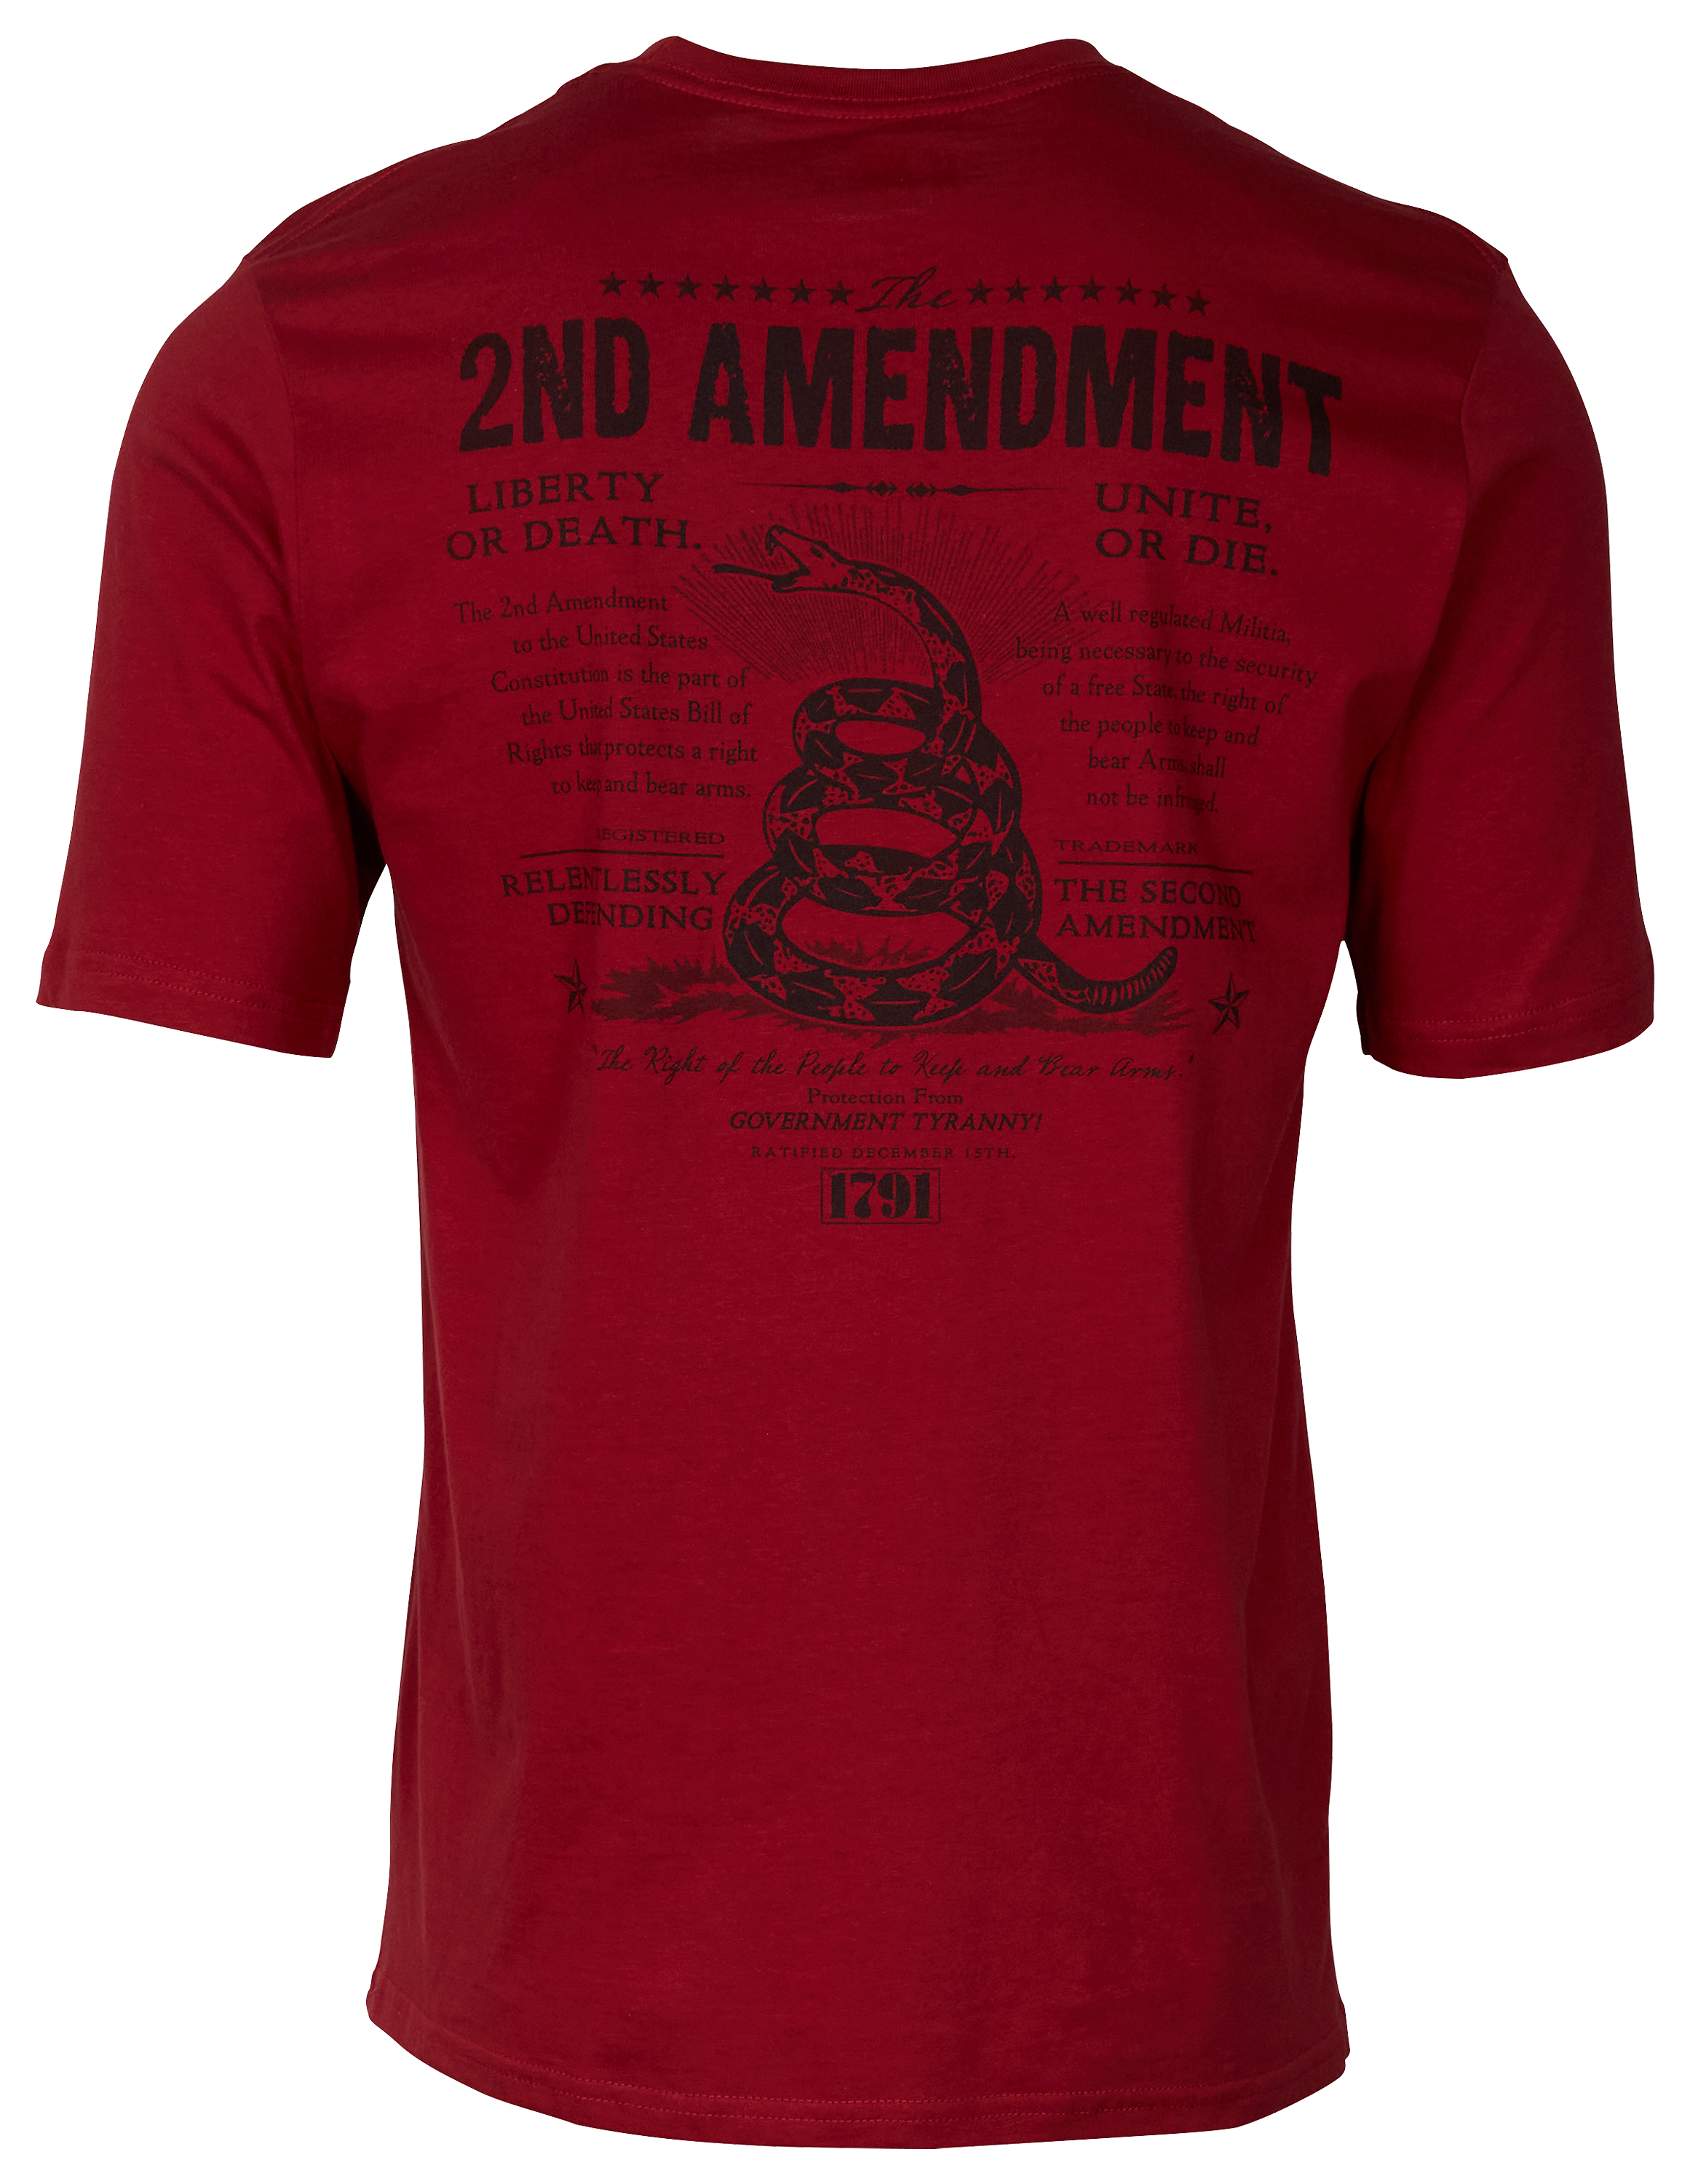 Bass Pro Shops 2nd Amendment Short-Sleeve T-Shirt for Men - Red - M